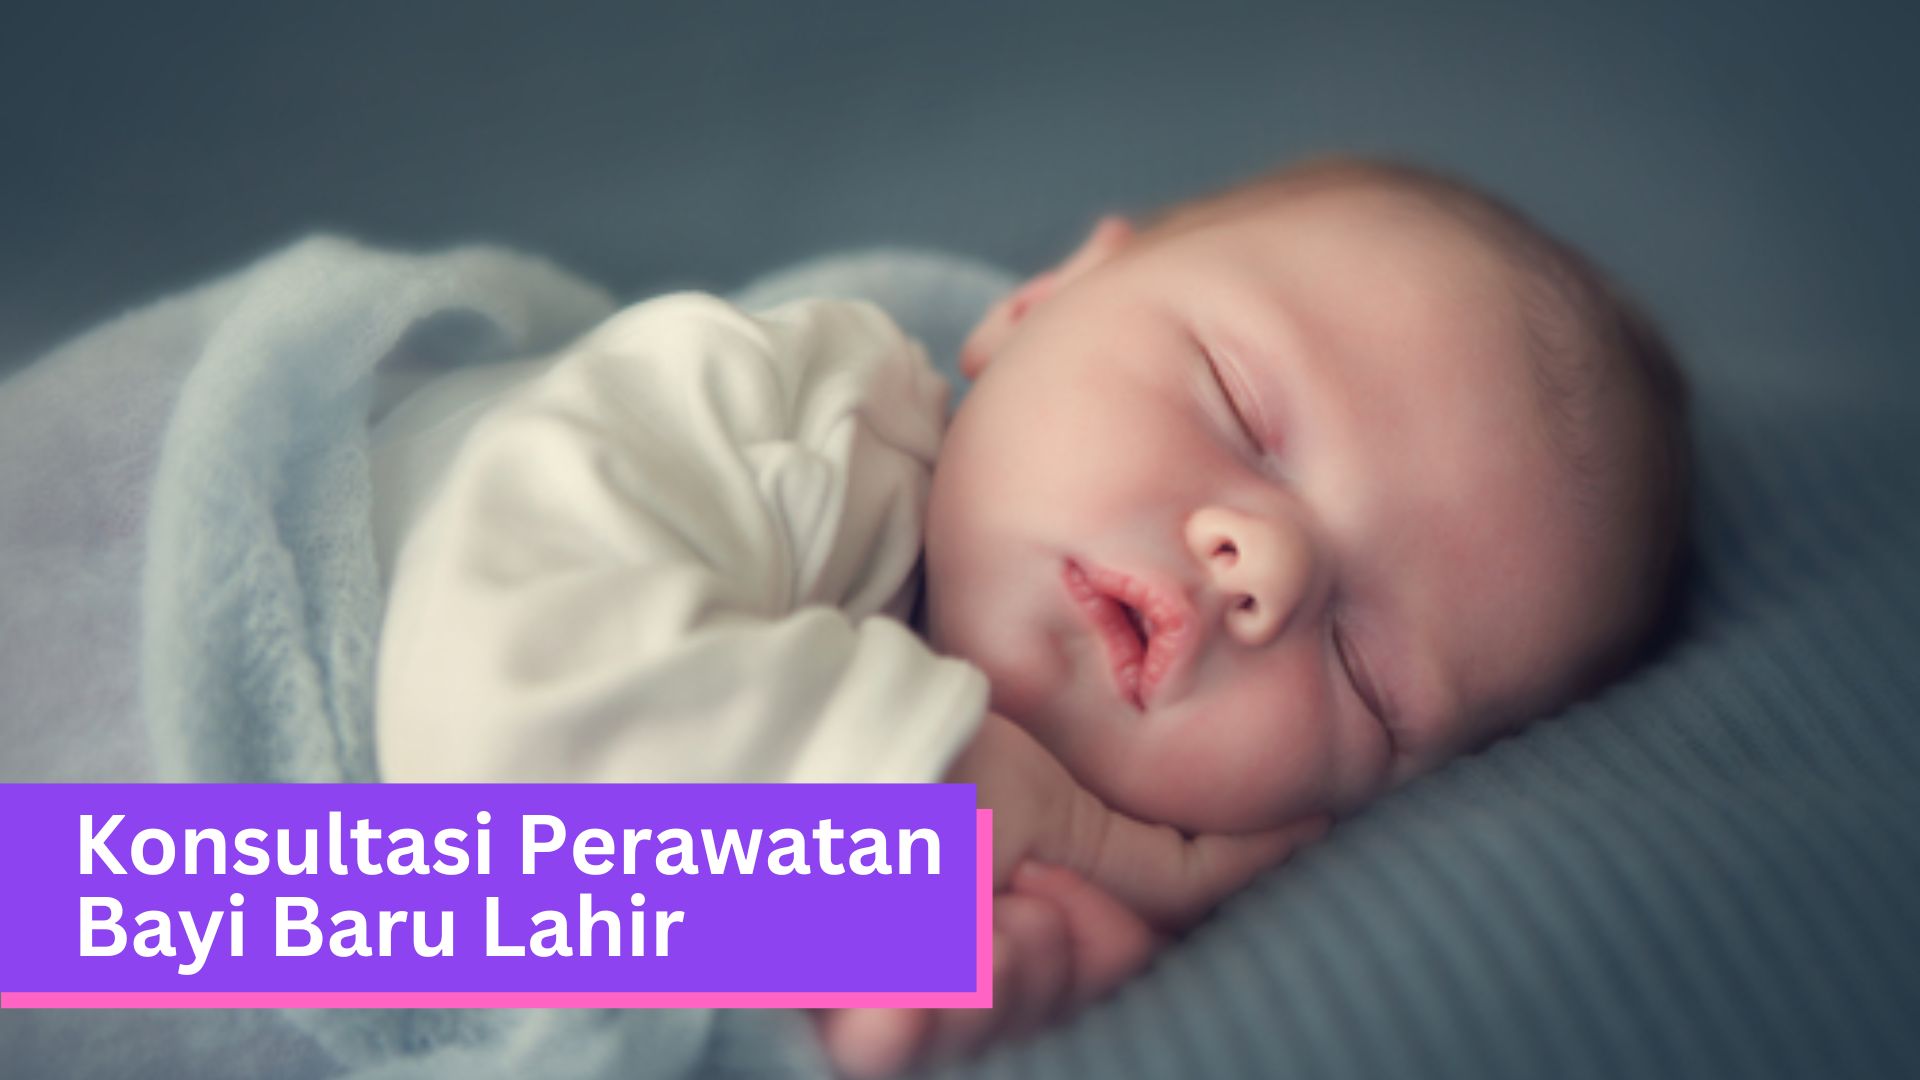 Konsultasi Perawatan Bayi Baru Lahir